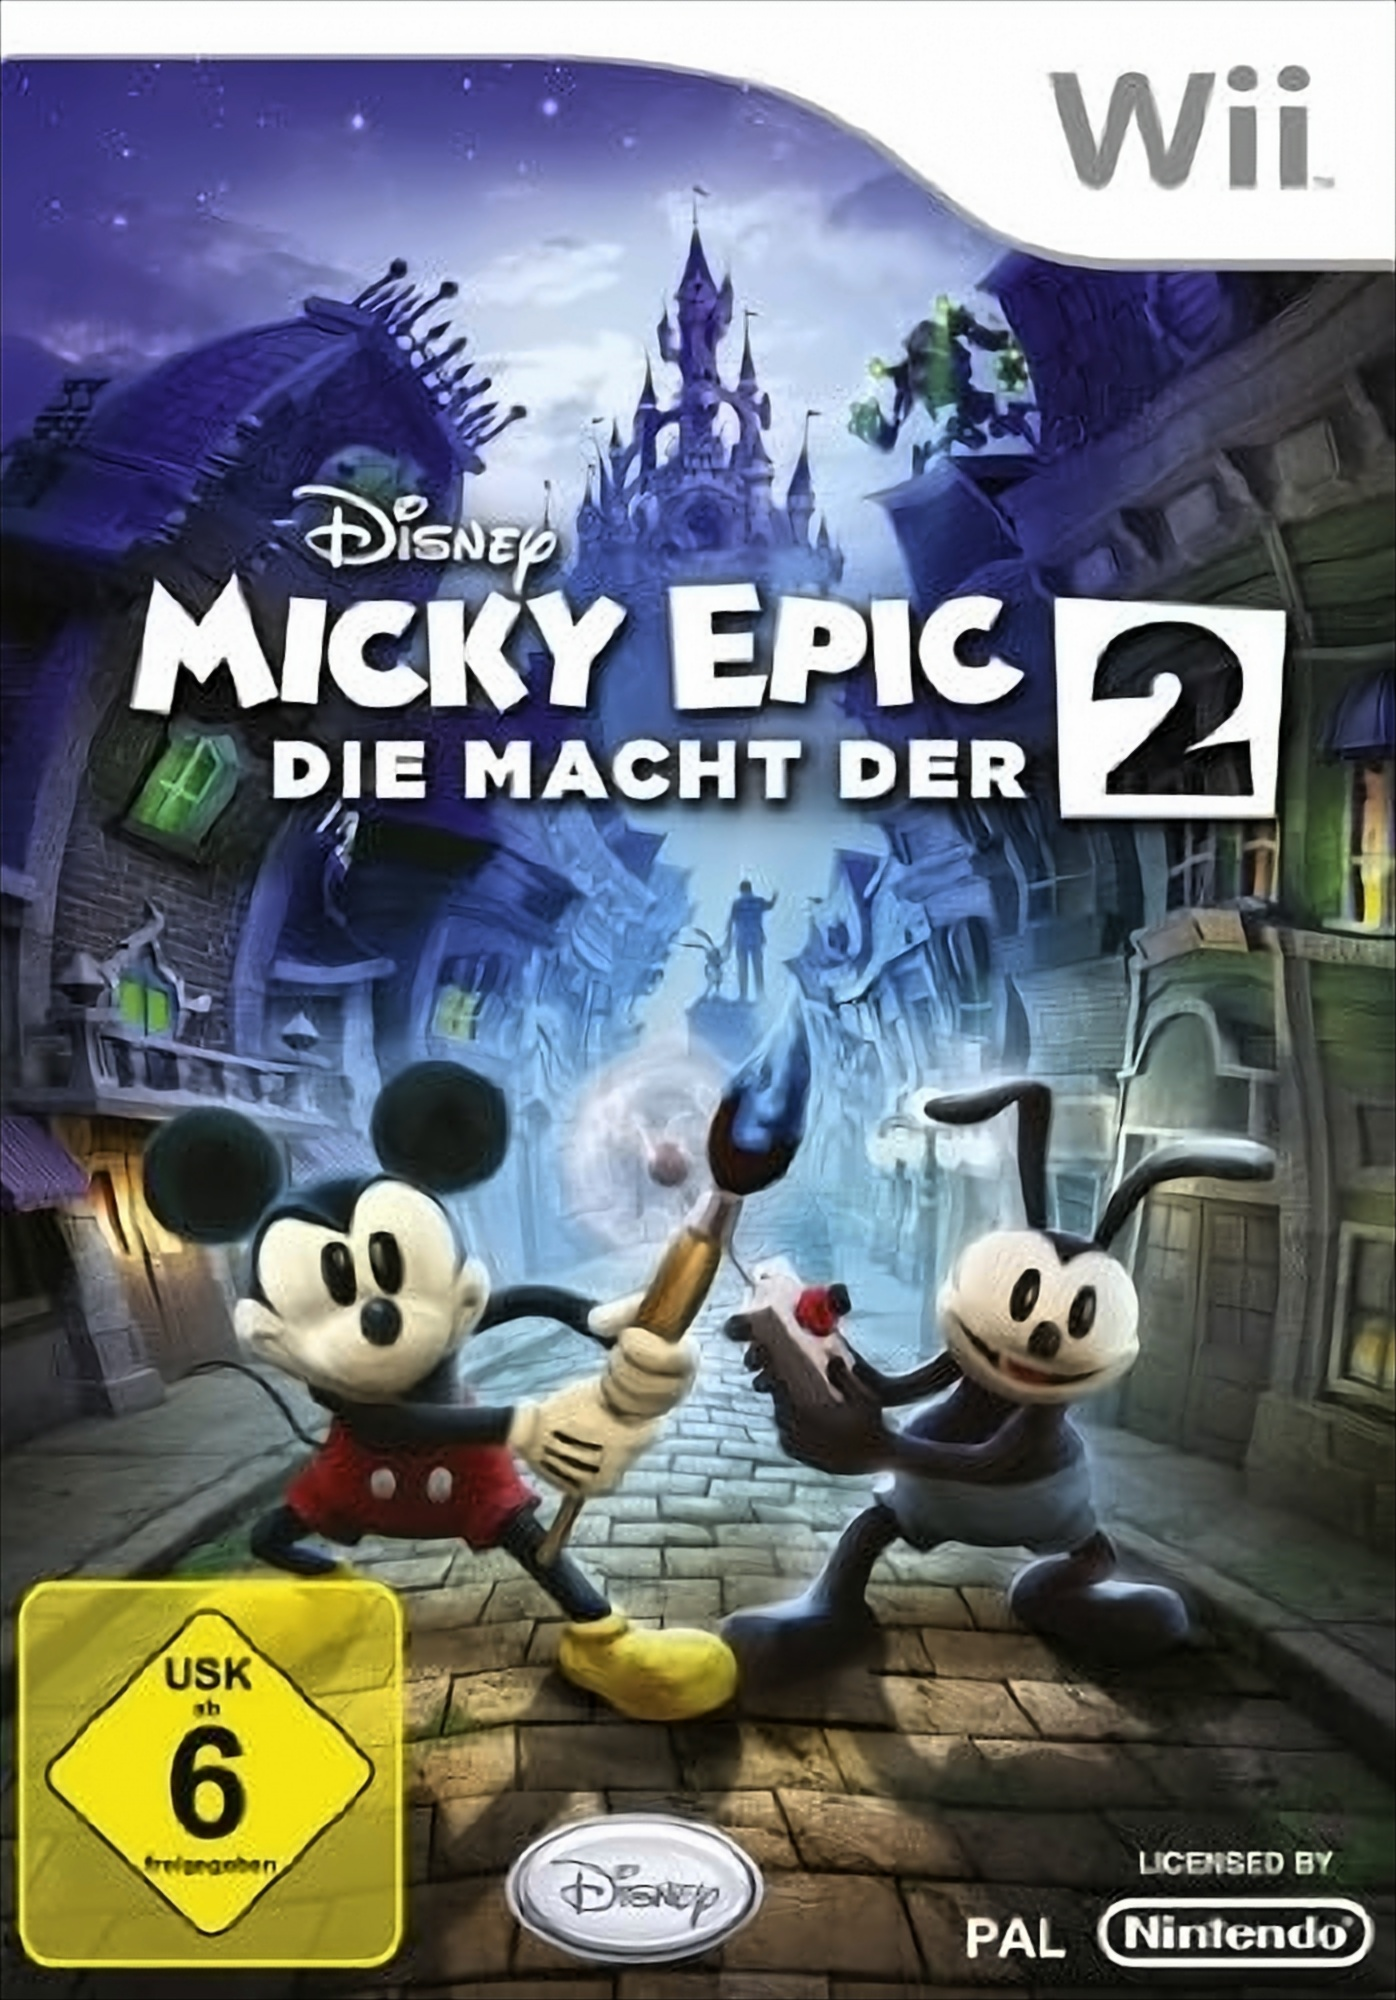 Disney Micky Epic: Macht der Wii] 2 - Die [Nintendo